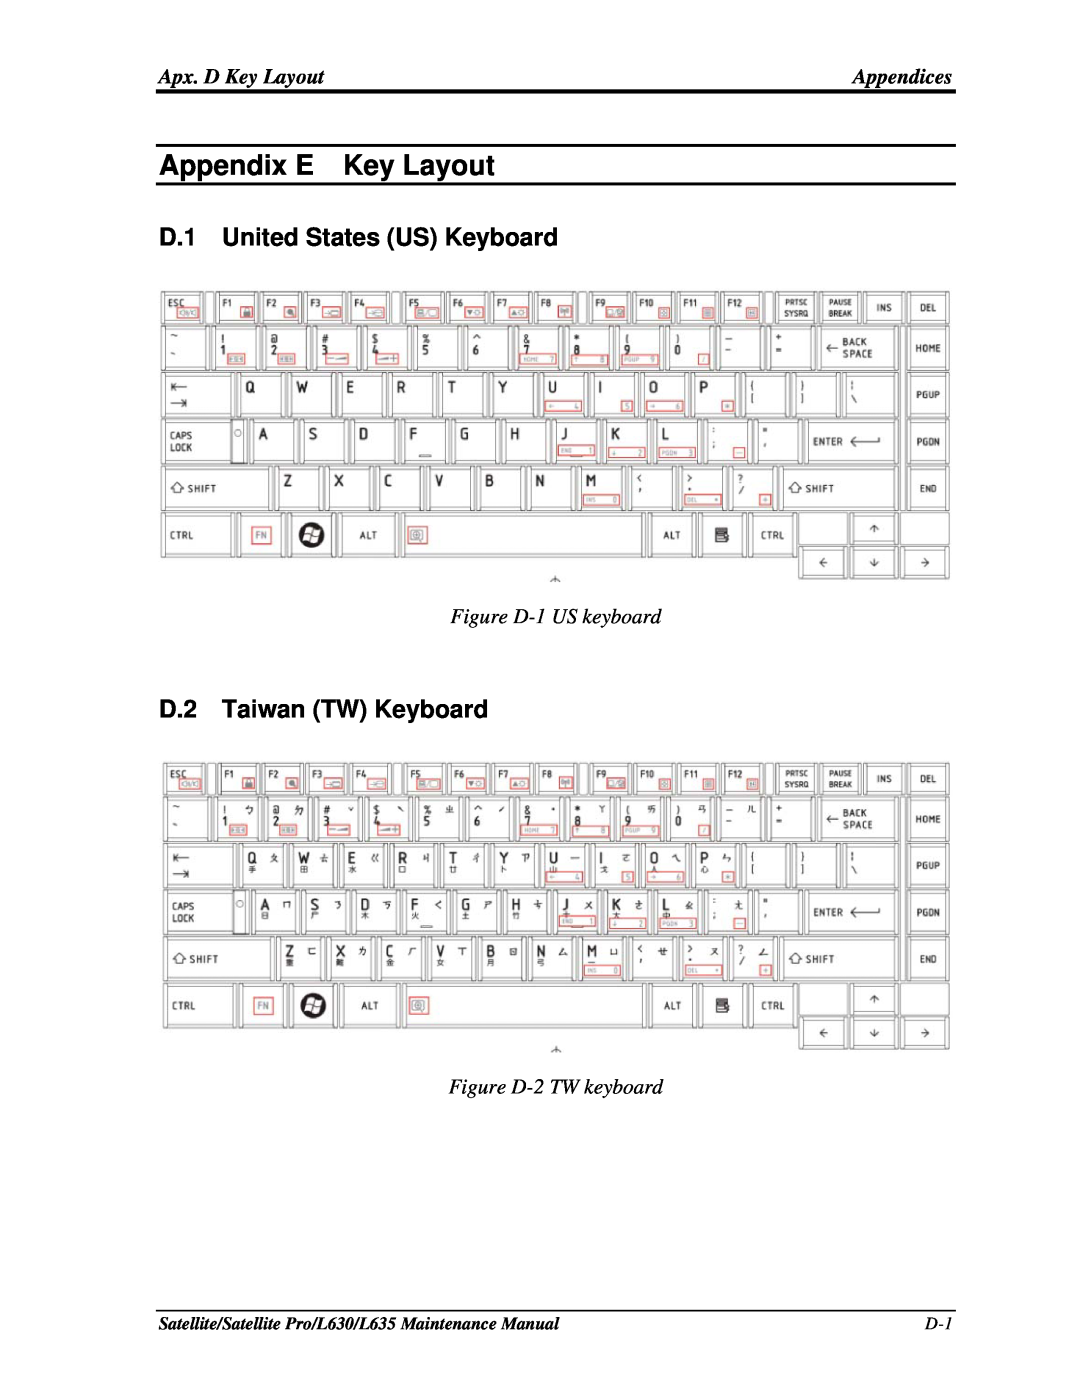 Toshiba L635, L630 manual Appendix E, Key Layout, D.1 United States US Keyboard, D.2 Taiwan TW Keyboard 